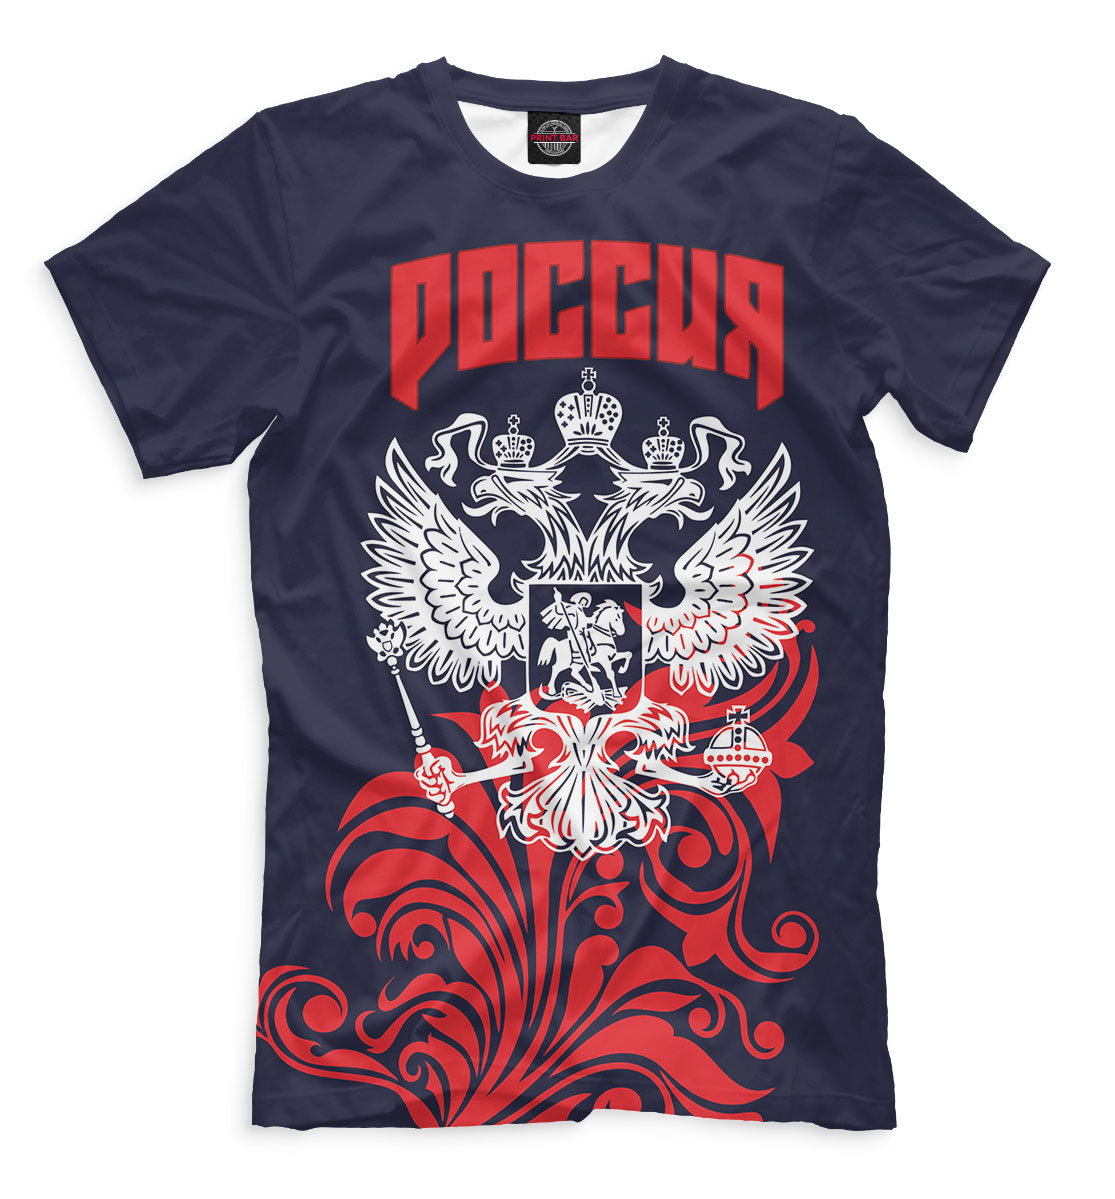 Мужская футболка с принтом Сборная России